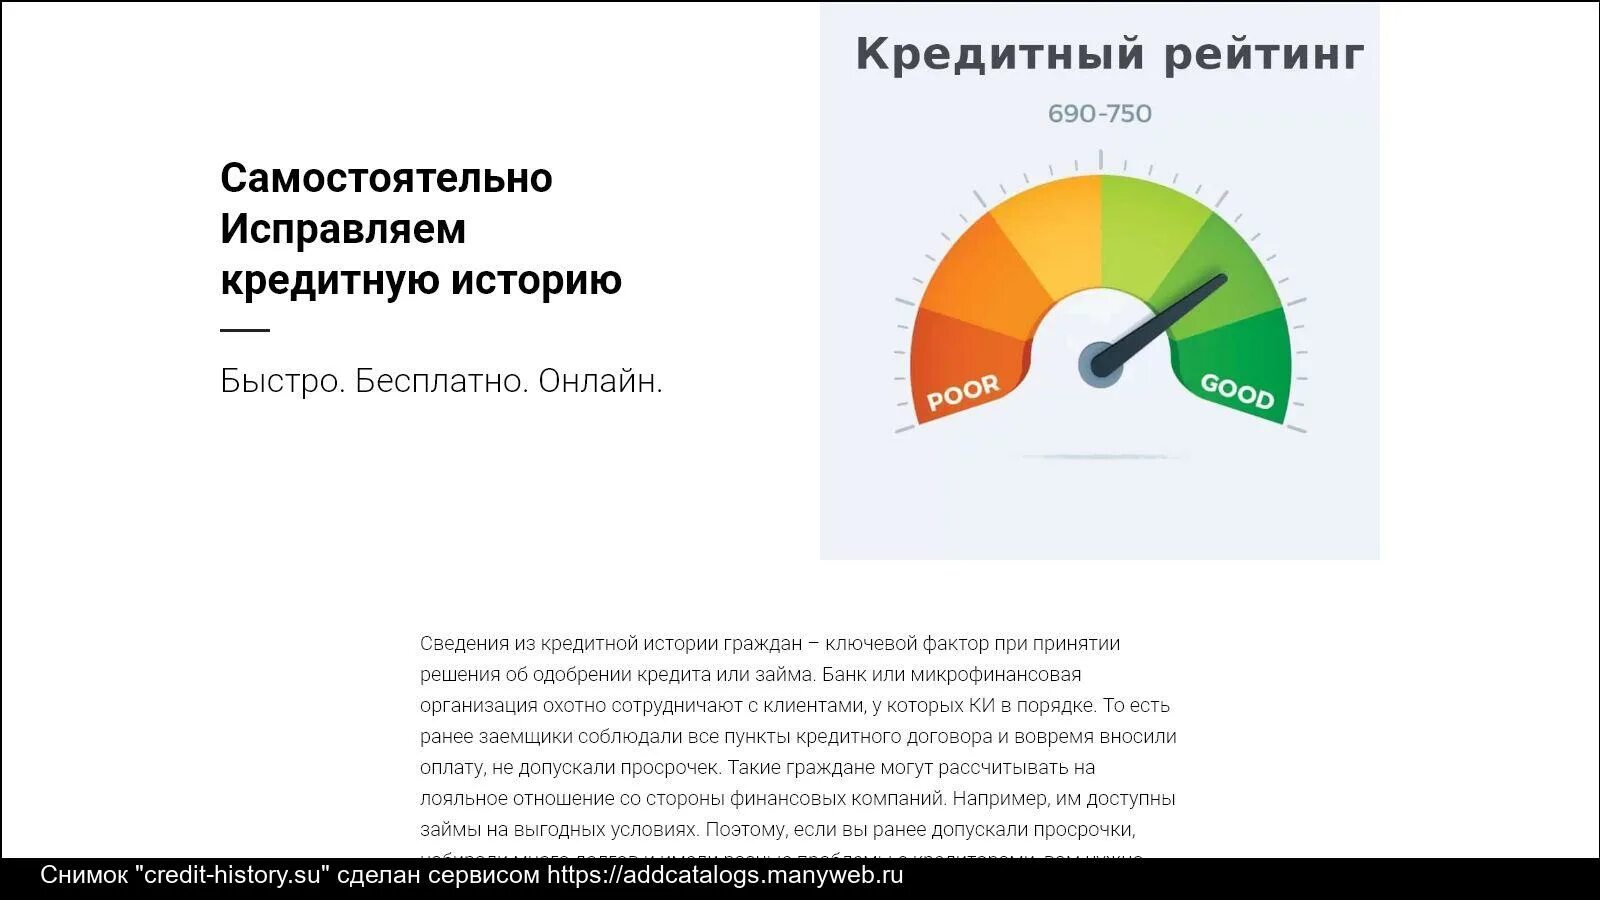 Кредитный рейтинг. Рейтинг кредитной истории. Кредитный рейтинг Украины. Кредитный рейтинг НБКИ. Как повысить кредитный рейтинг быстро